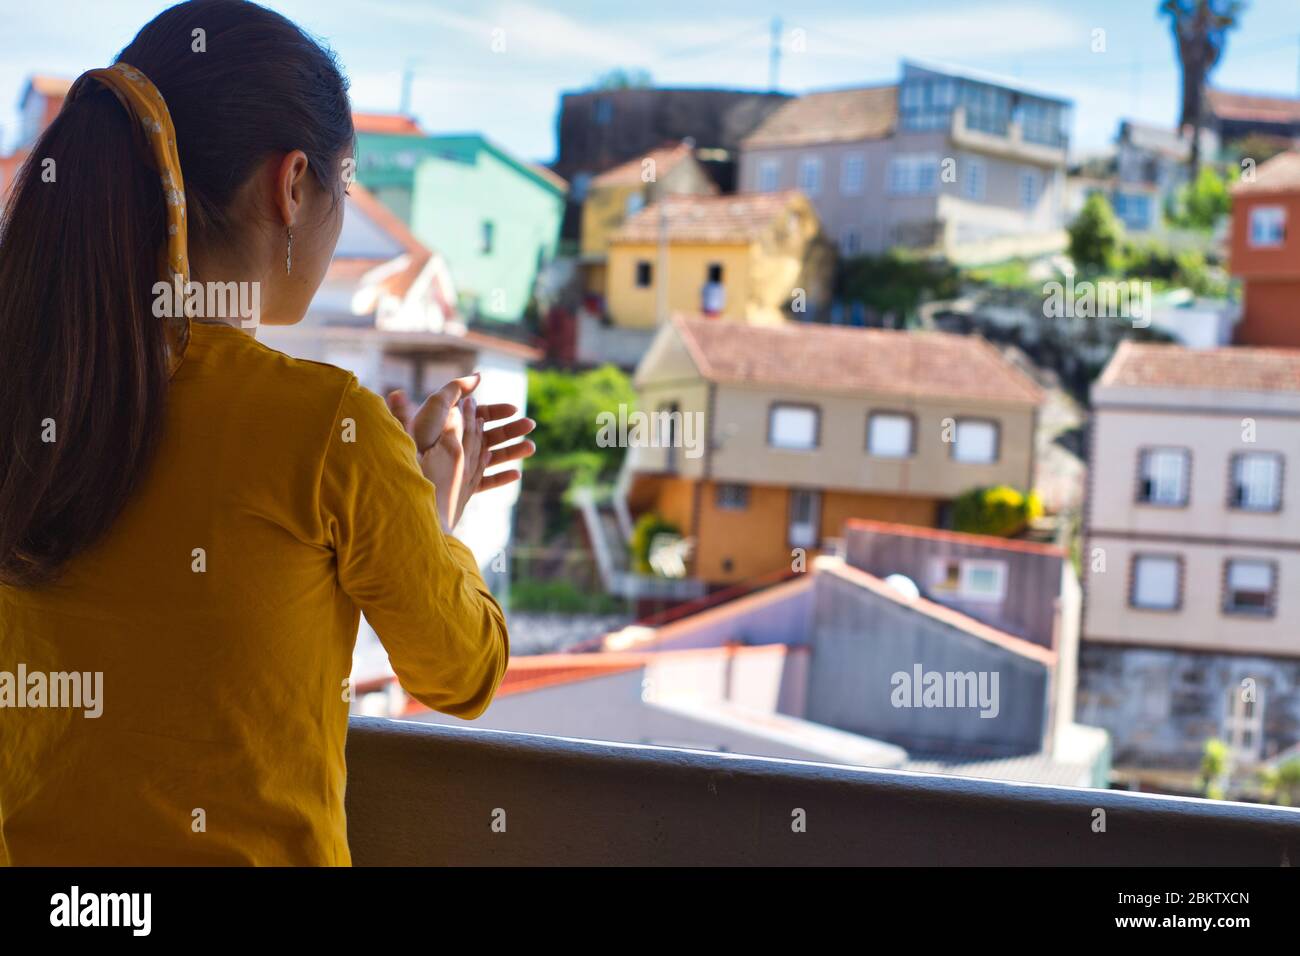 Giovane donna che le ha aggrappato le mani sul balcone per showi gratitudine a tutti gli operatori sanitari durante l'epidemia di coronavirus. Molte case colorate. Foto Stock